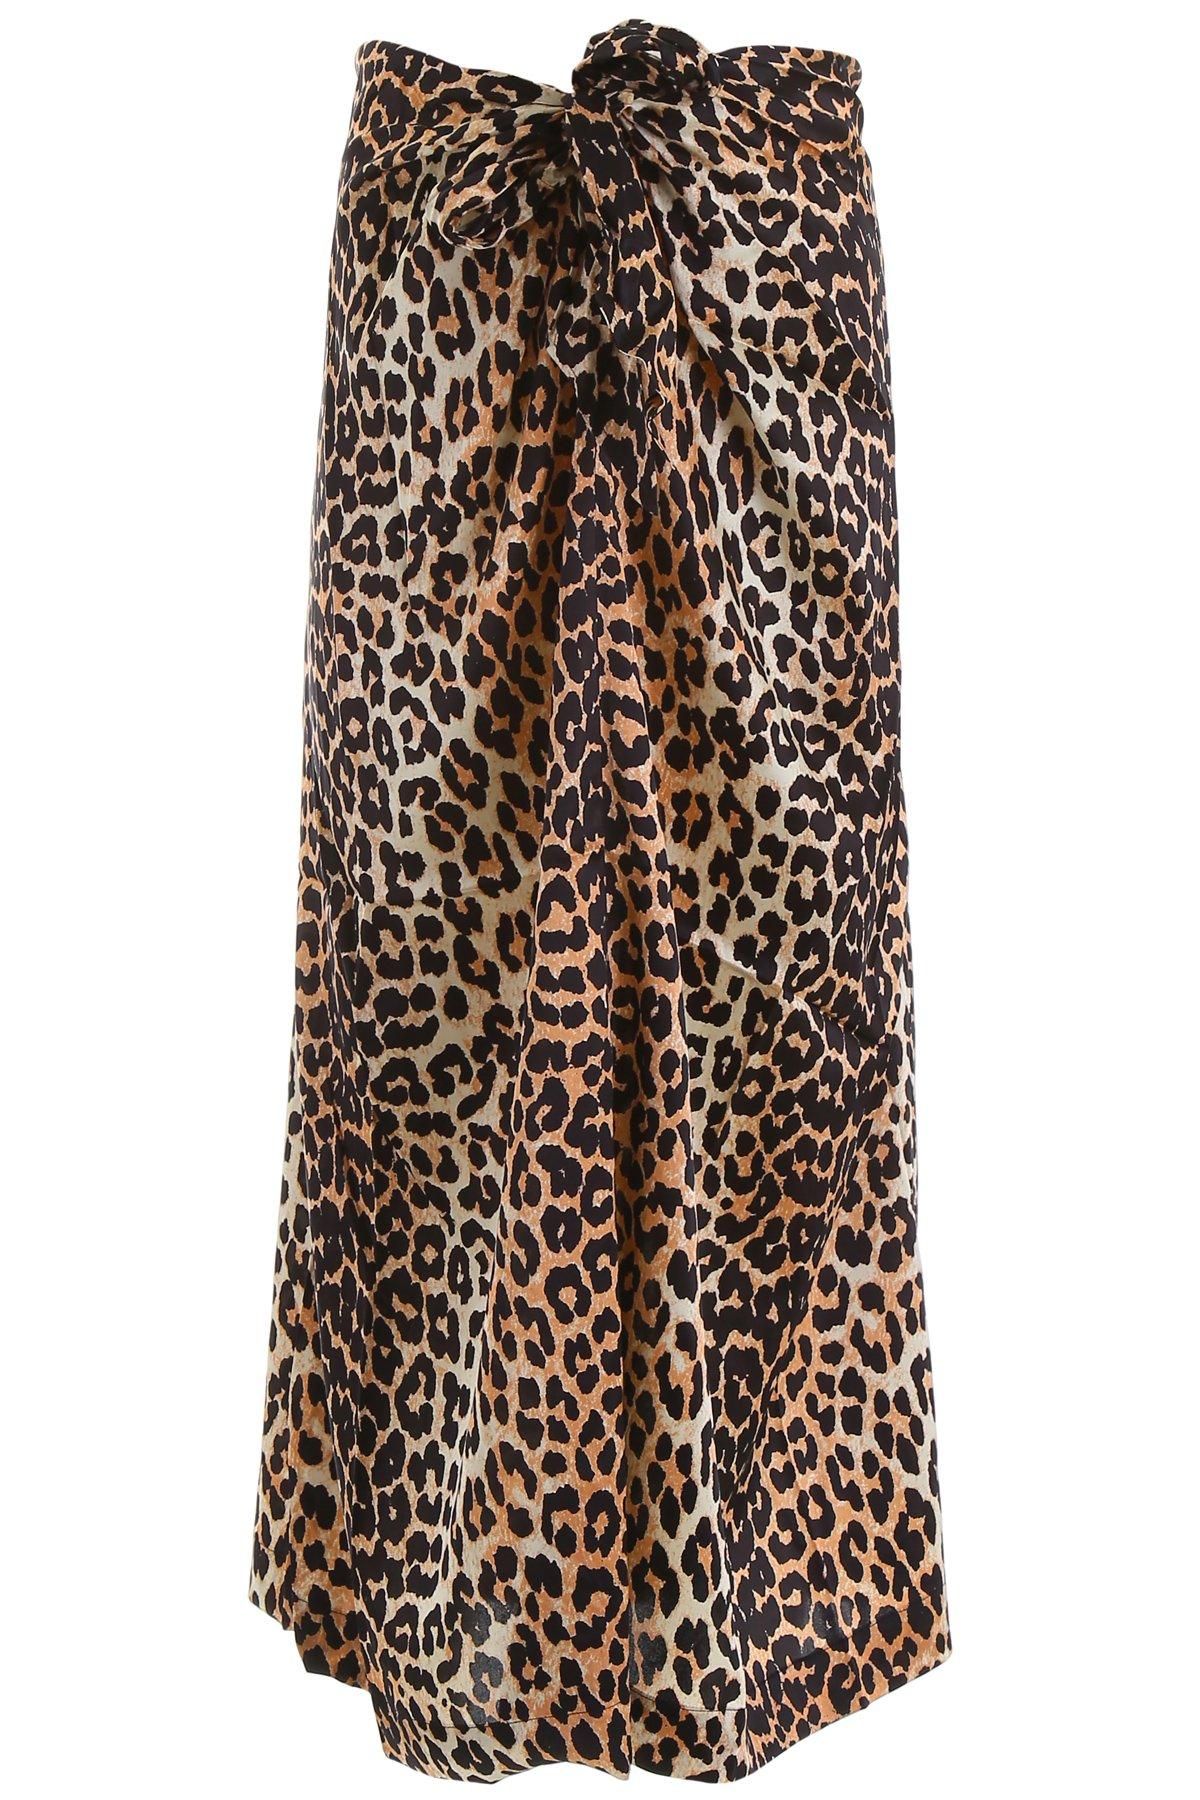 Ganni Silk Leopard Print Skirt - Save 1% - Lyst